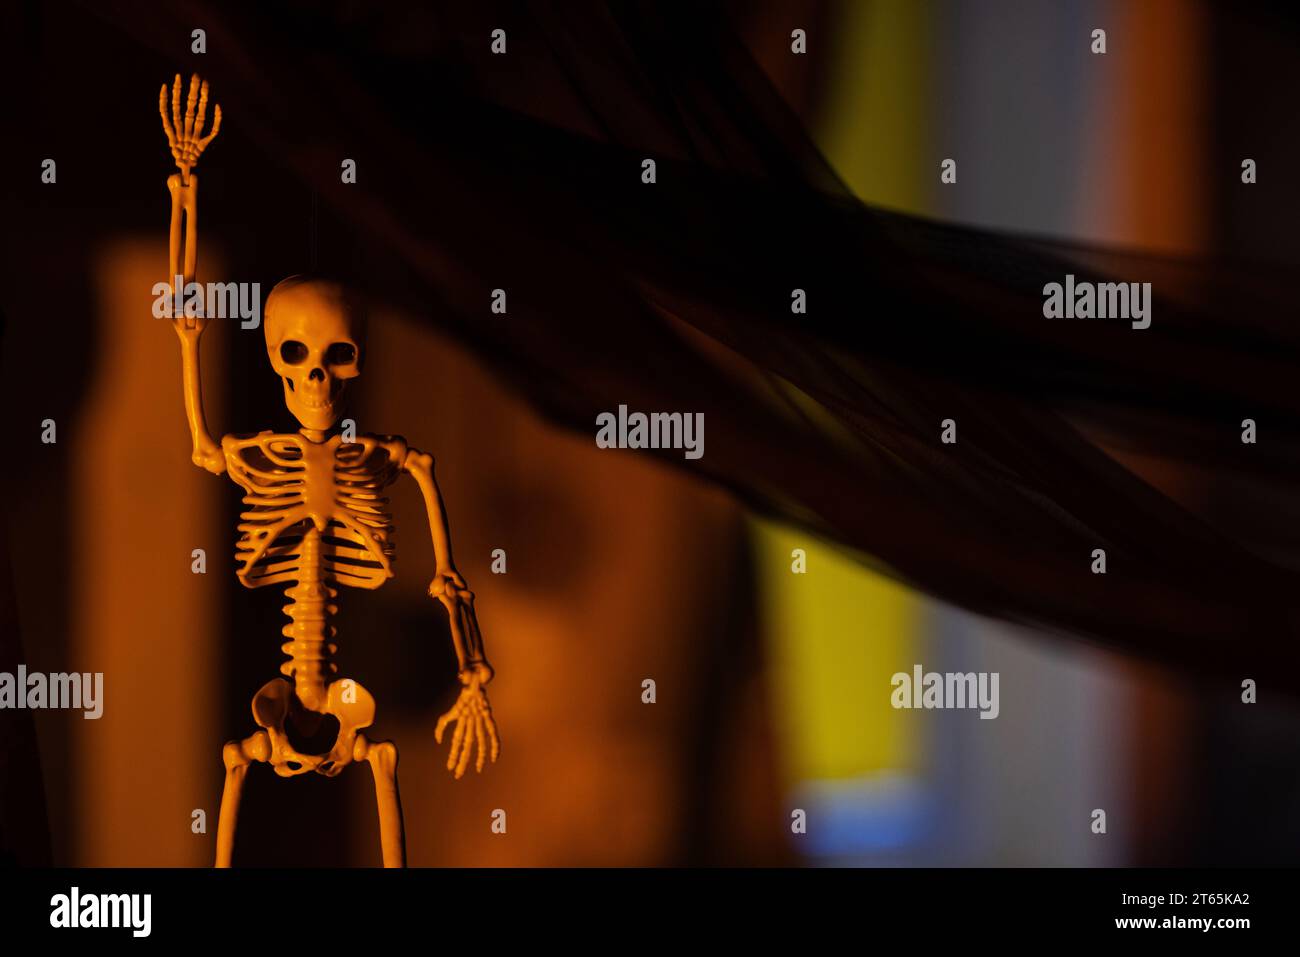 Decorazione per la festa di Halloween. Immagine ravvicinata di uno scheletro horror con la mano in alto appeso al panno nero in una stanza buia di notte. Foto Stock